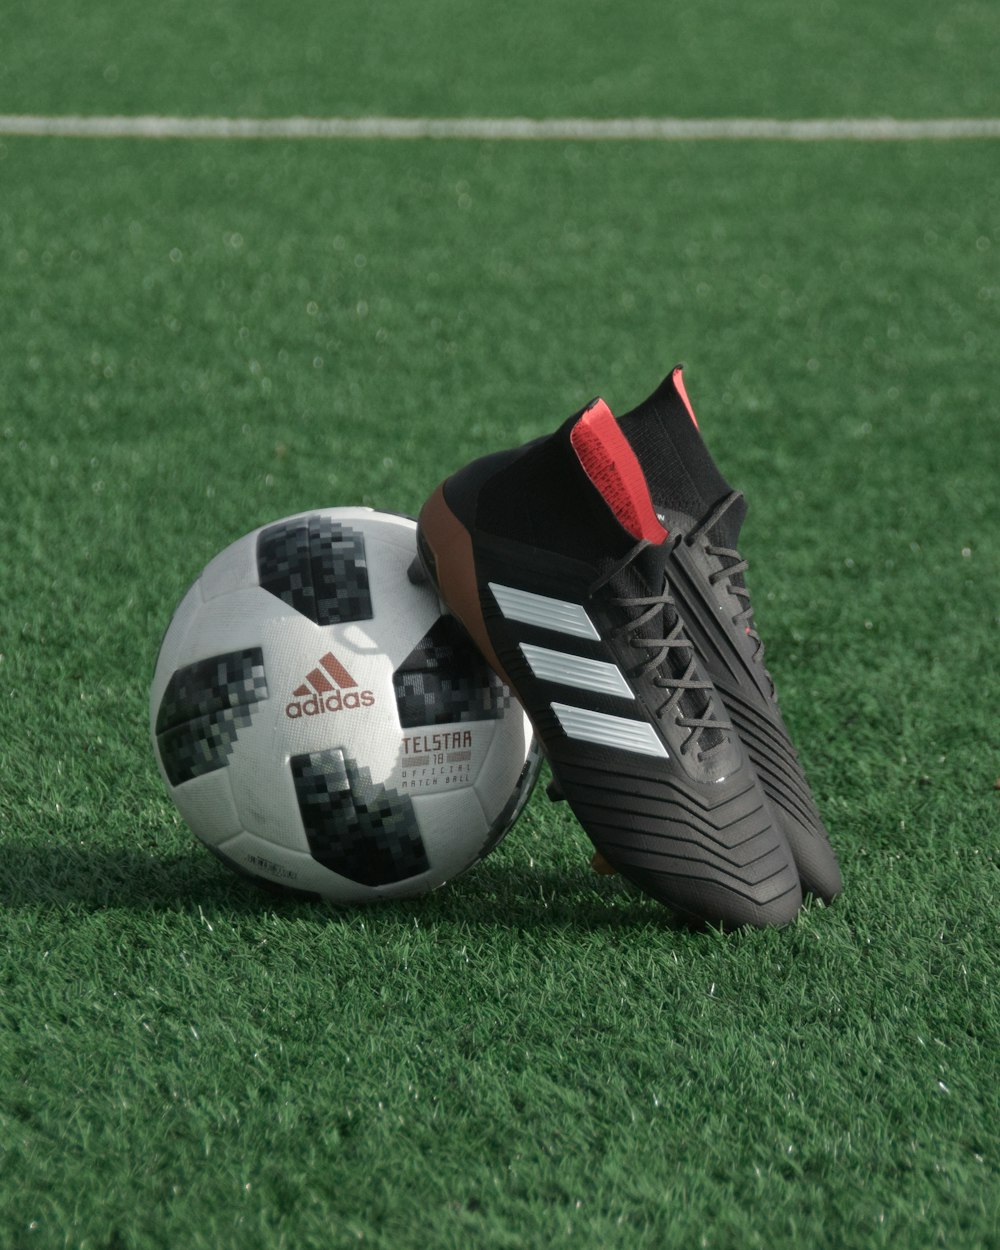 Fotos de botas de fútbol | imágenes y fotos gratis en Unsplash